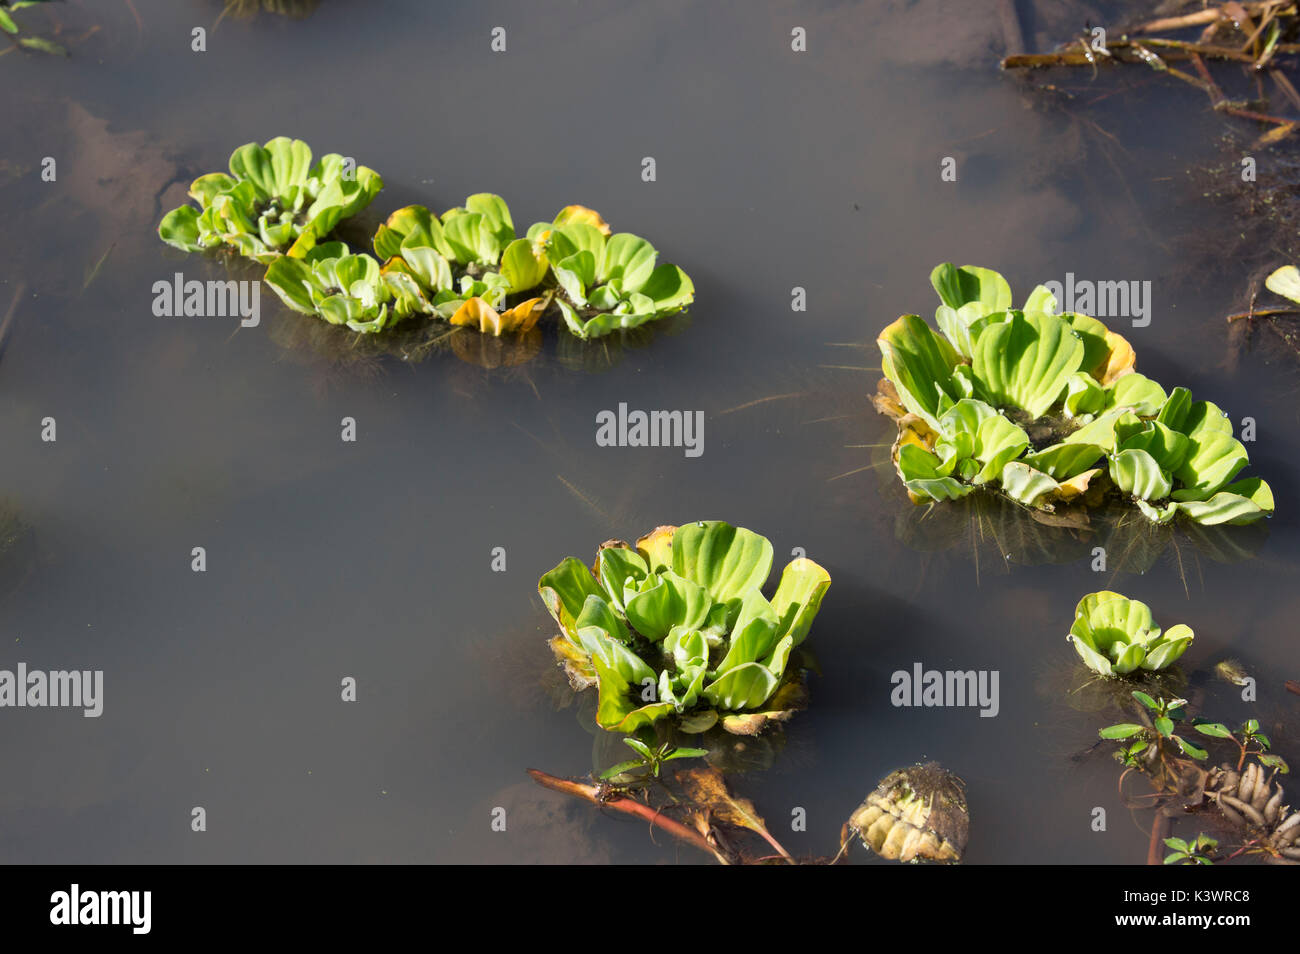 La laitue d'eau (Pistia stratiotes) - une plante envahissante aquatique flottante qui envahit les barrages, casseroles et rivières. Également connu sous le nom de laitue et du Nil Banque D'Images